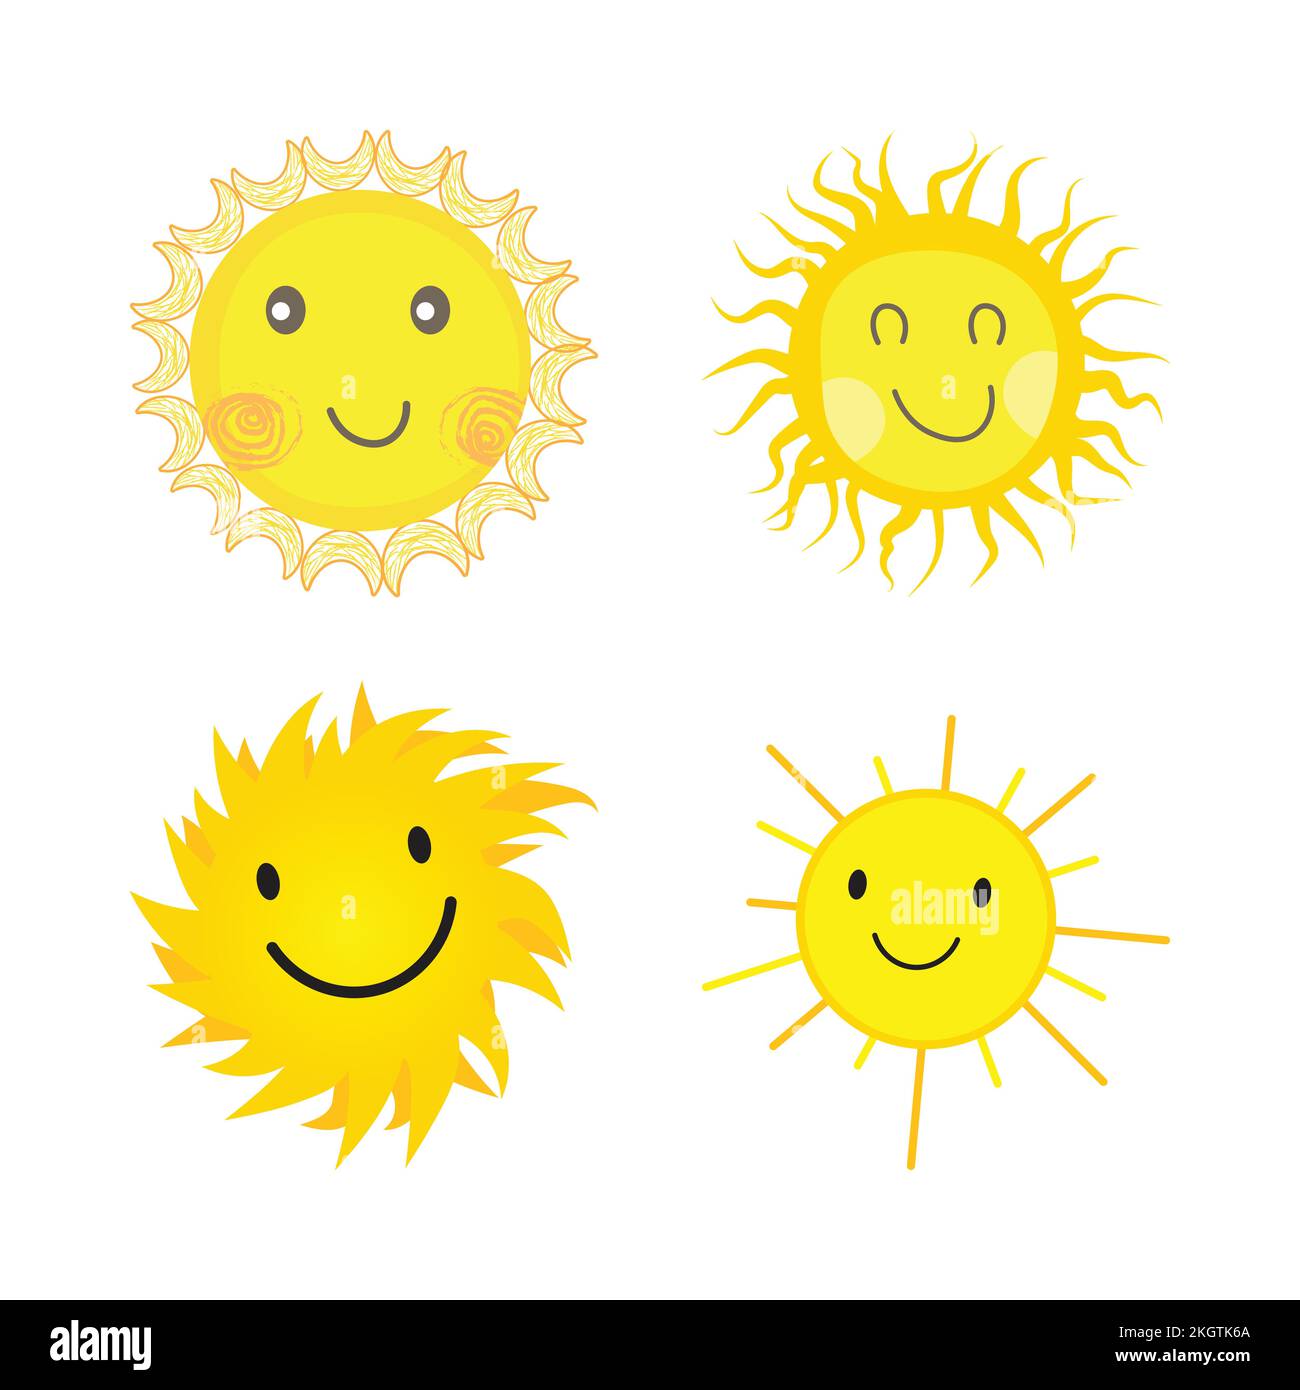 Yellow cartoon star smiling face -Fotos und -Bildmaterial in hoher  Auflösung - Seite 2 - Alamy